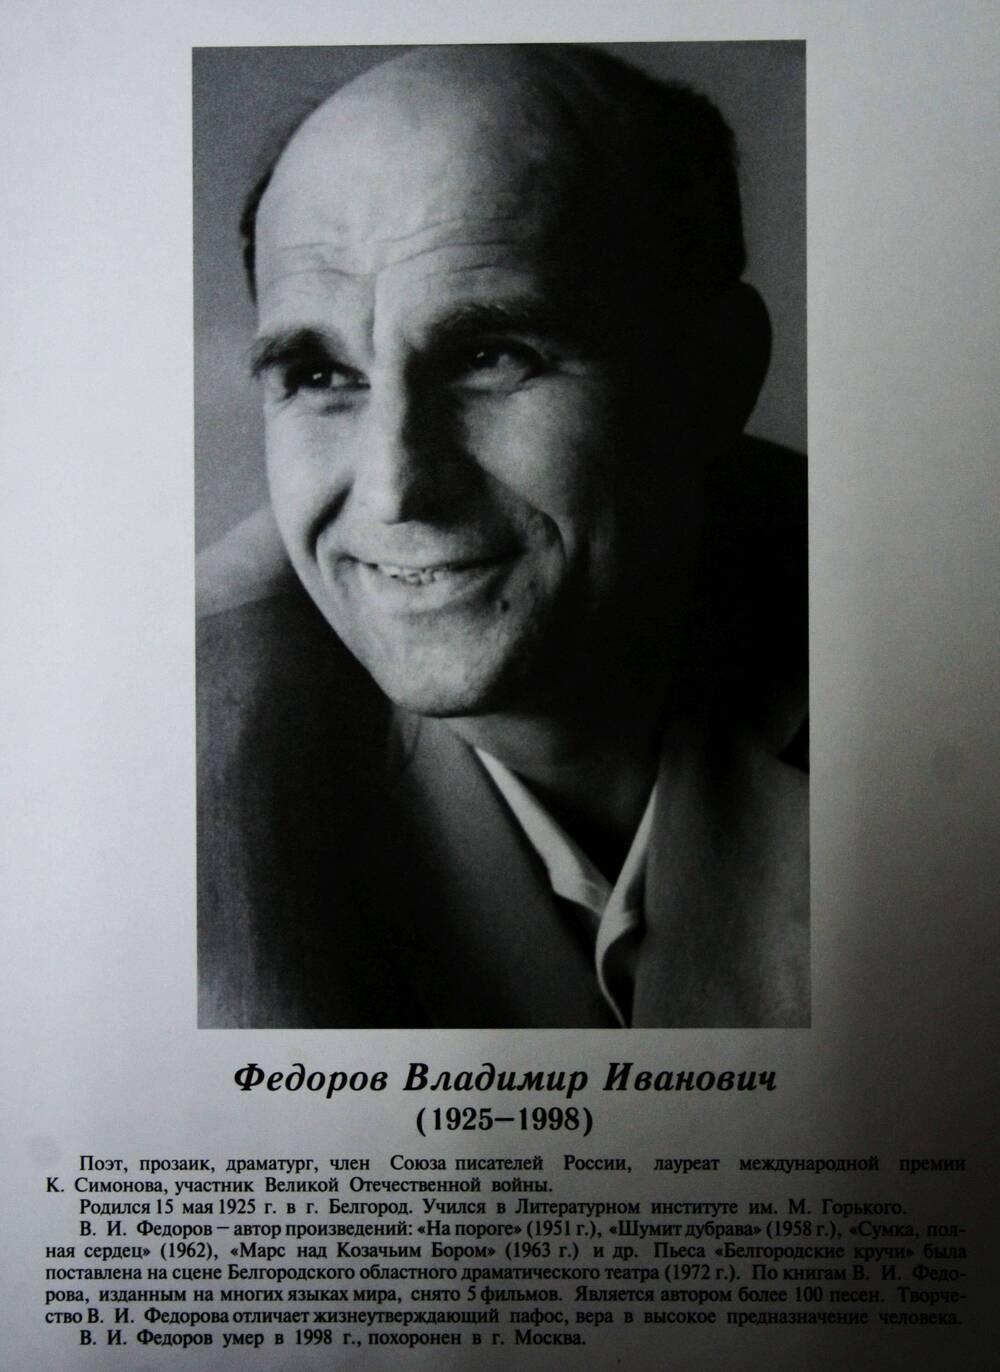 Плакат (фотопортрет) из комплекта Галерея славных имен Белгородчины. Федоров Владимир Иванович (1925-1998).